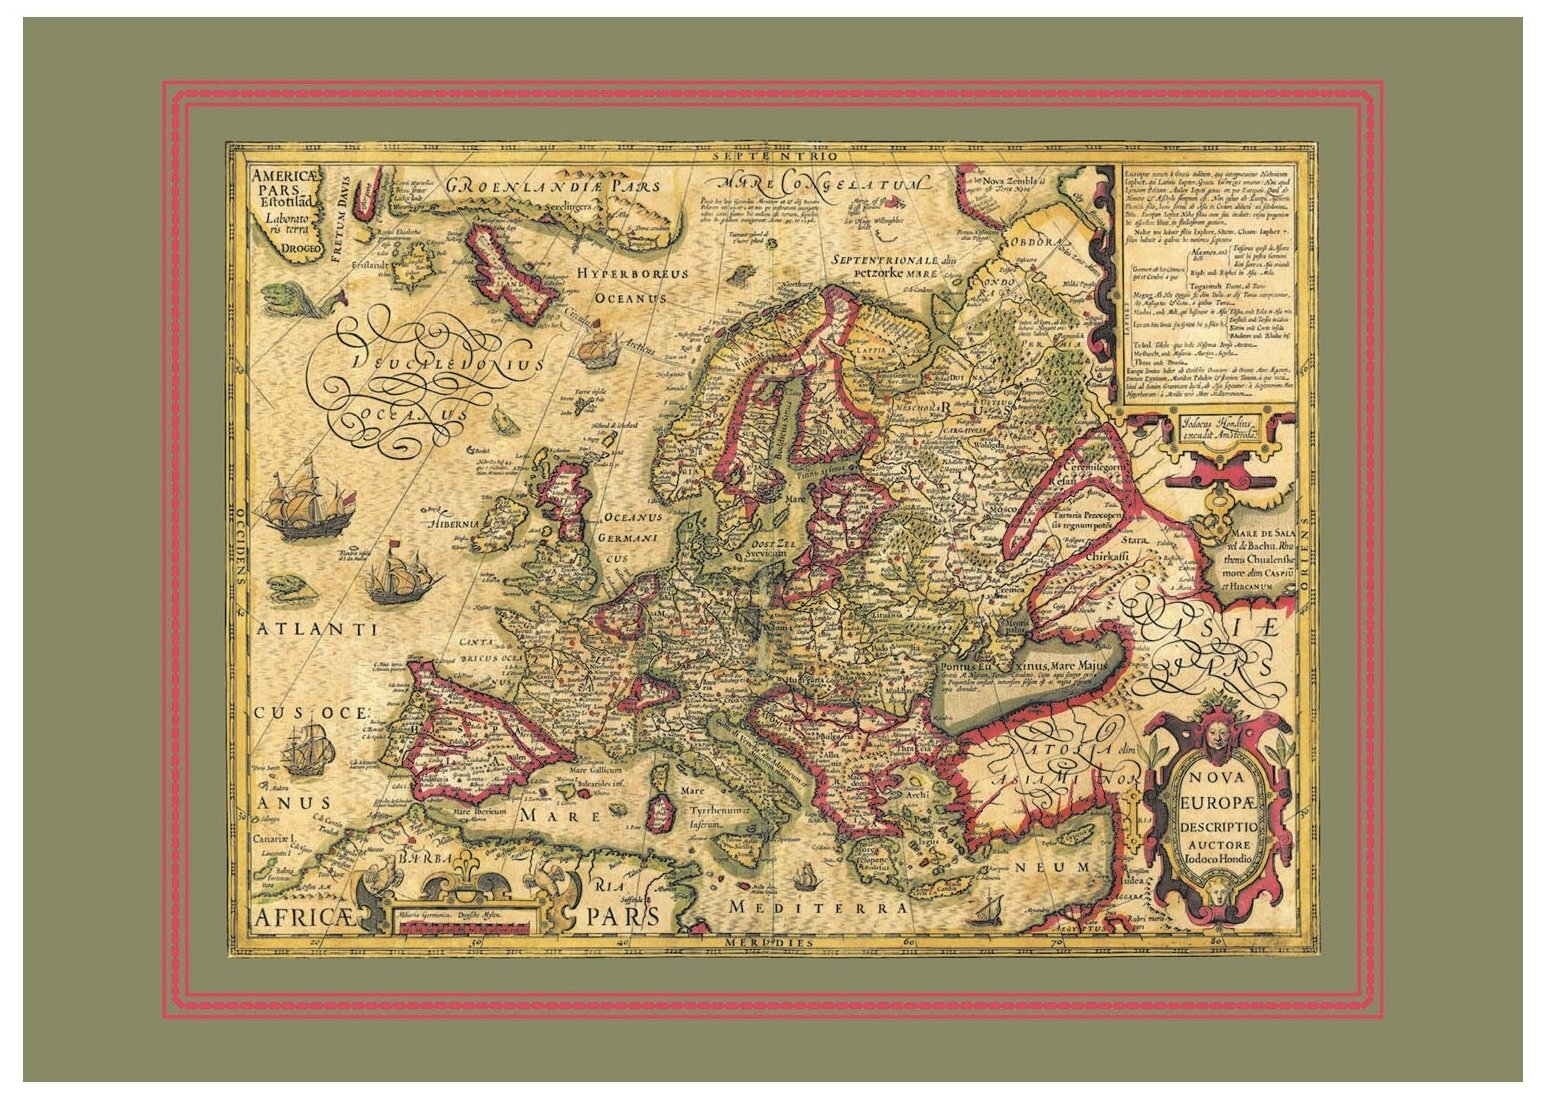 Карта Новая Европа старинная 1606 г размер 68х48 см декор интерьера. Подарок на 23 февраля начальнику/госслужащему/чиновнику.